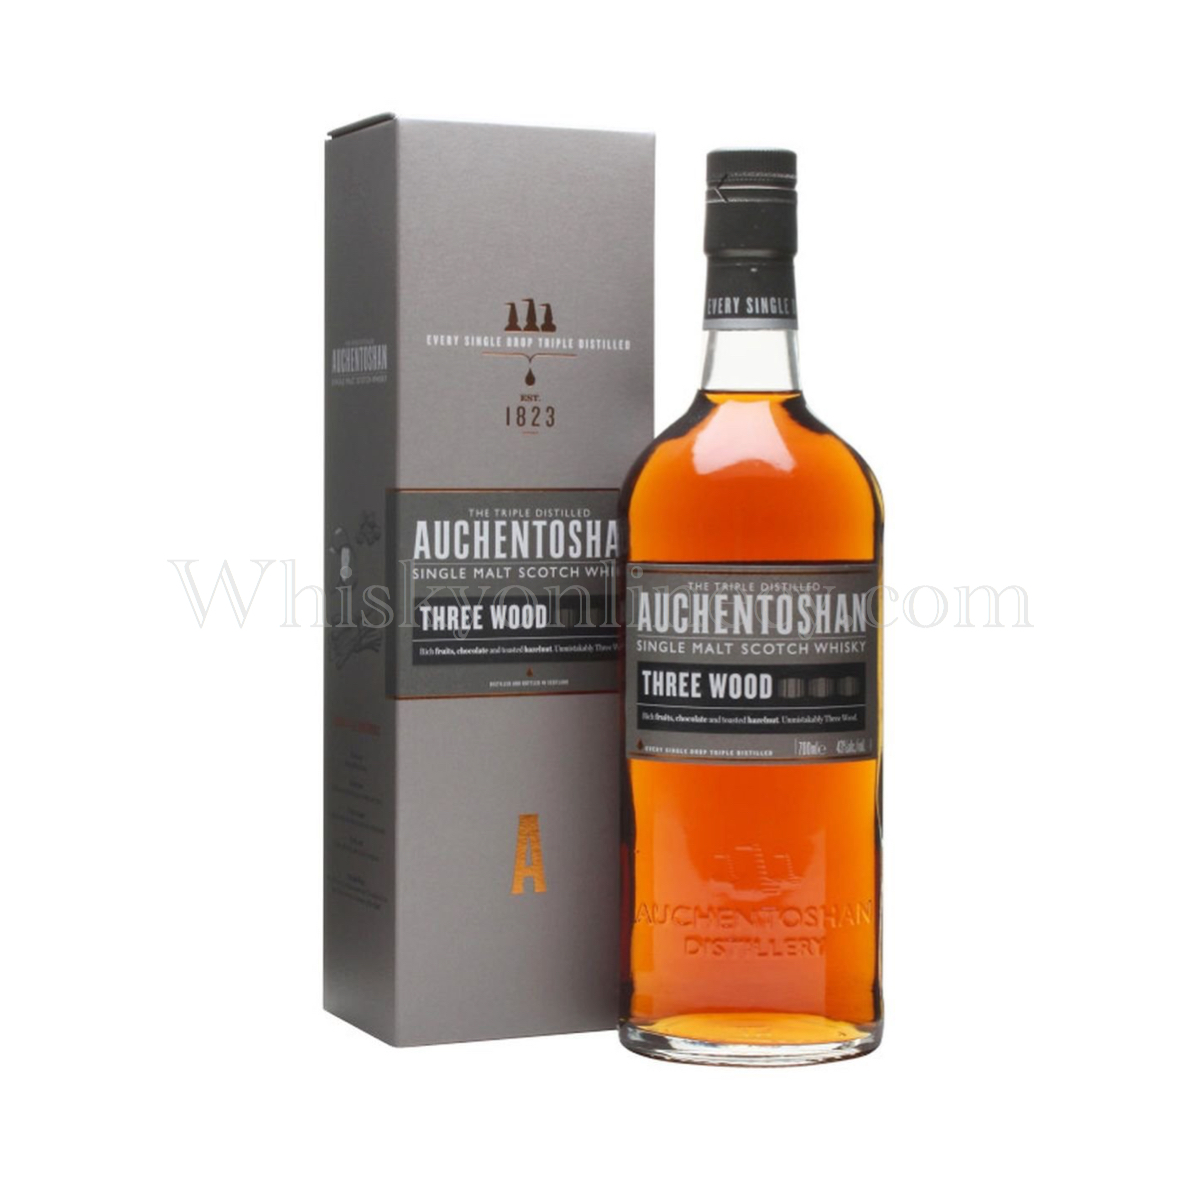 Whisky Online Cyprus - Auchentoshan 43%) Three Wood (70cl